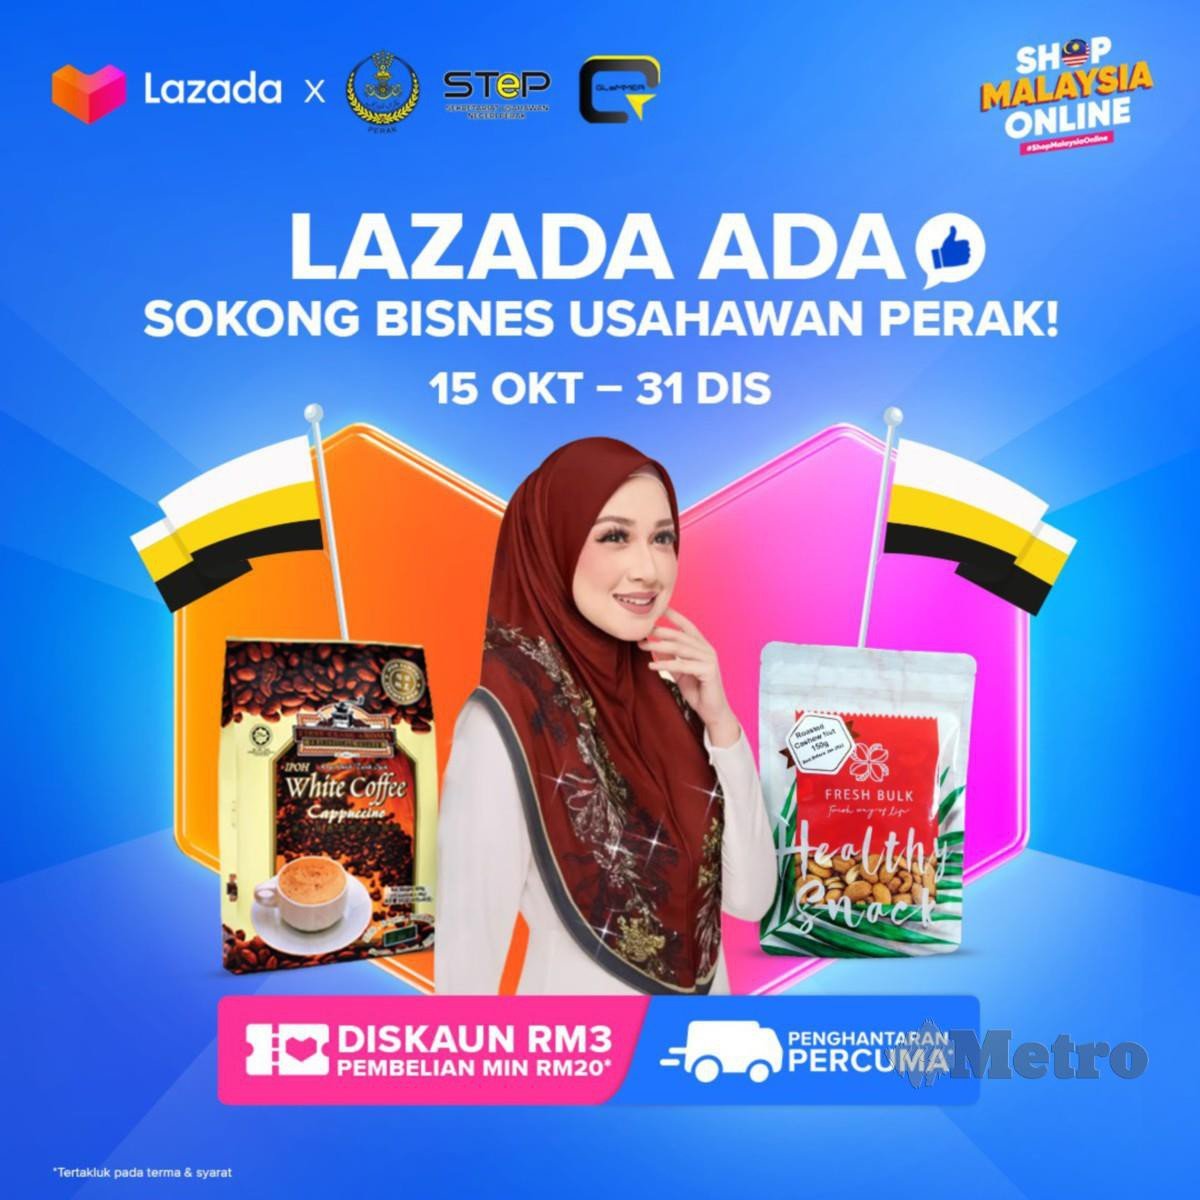 Karnival STeP Lazada yang dianjurkan dari 15 Oktober hingga 31 Disember 2021 mempromosi perniagaan dan produk Perak menerusi laman khas Shop Malaysia Online di aplikasinya.